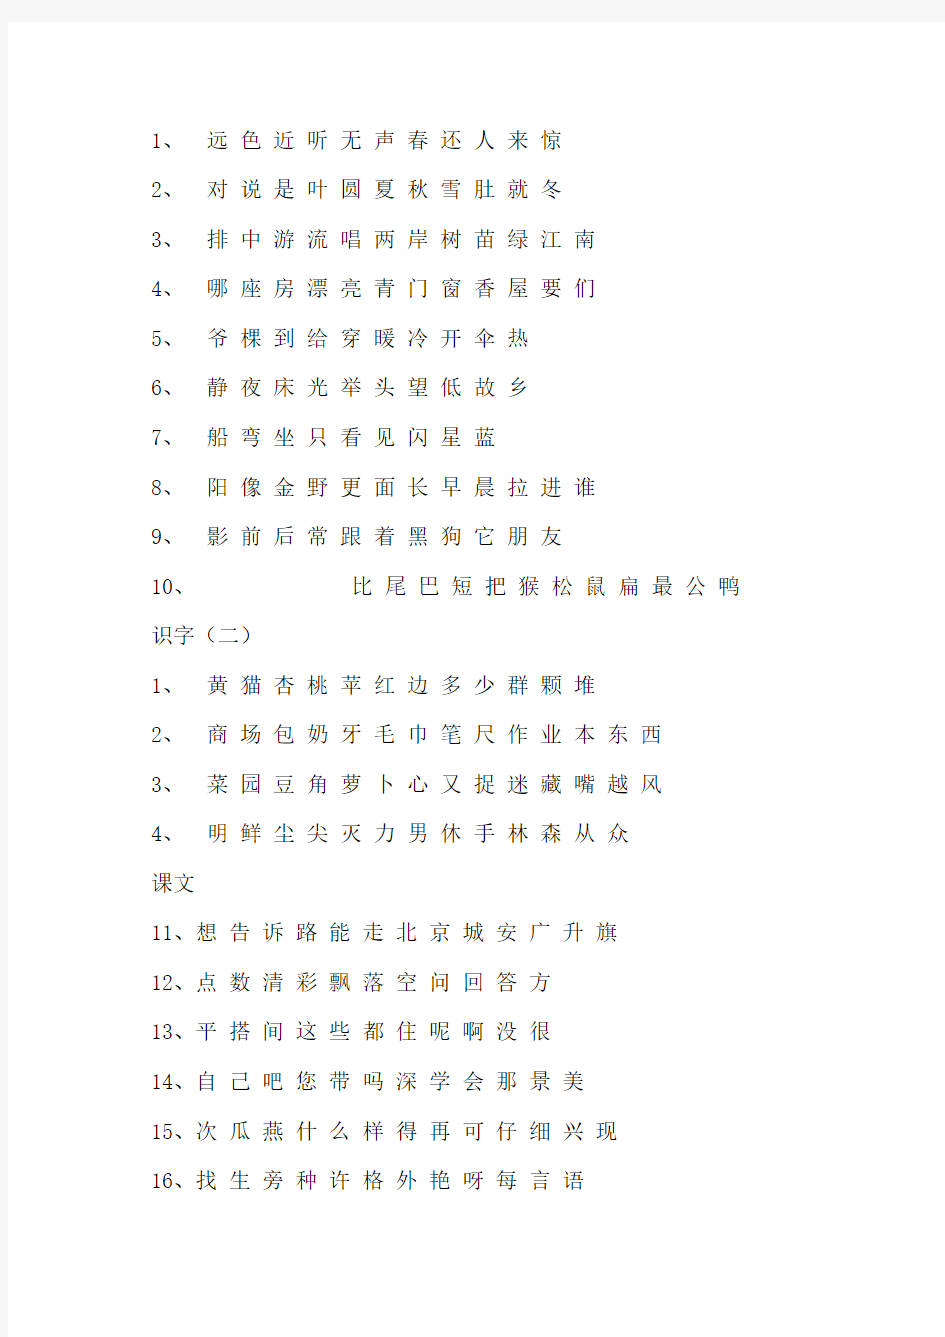 人教版小学语文1—6年级生字表(全)